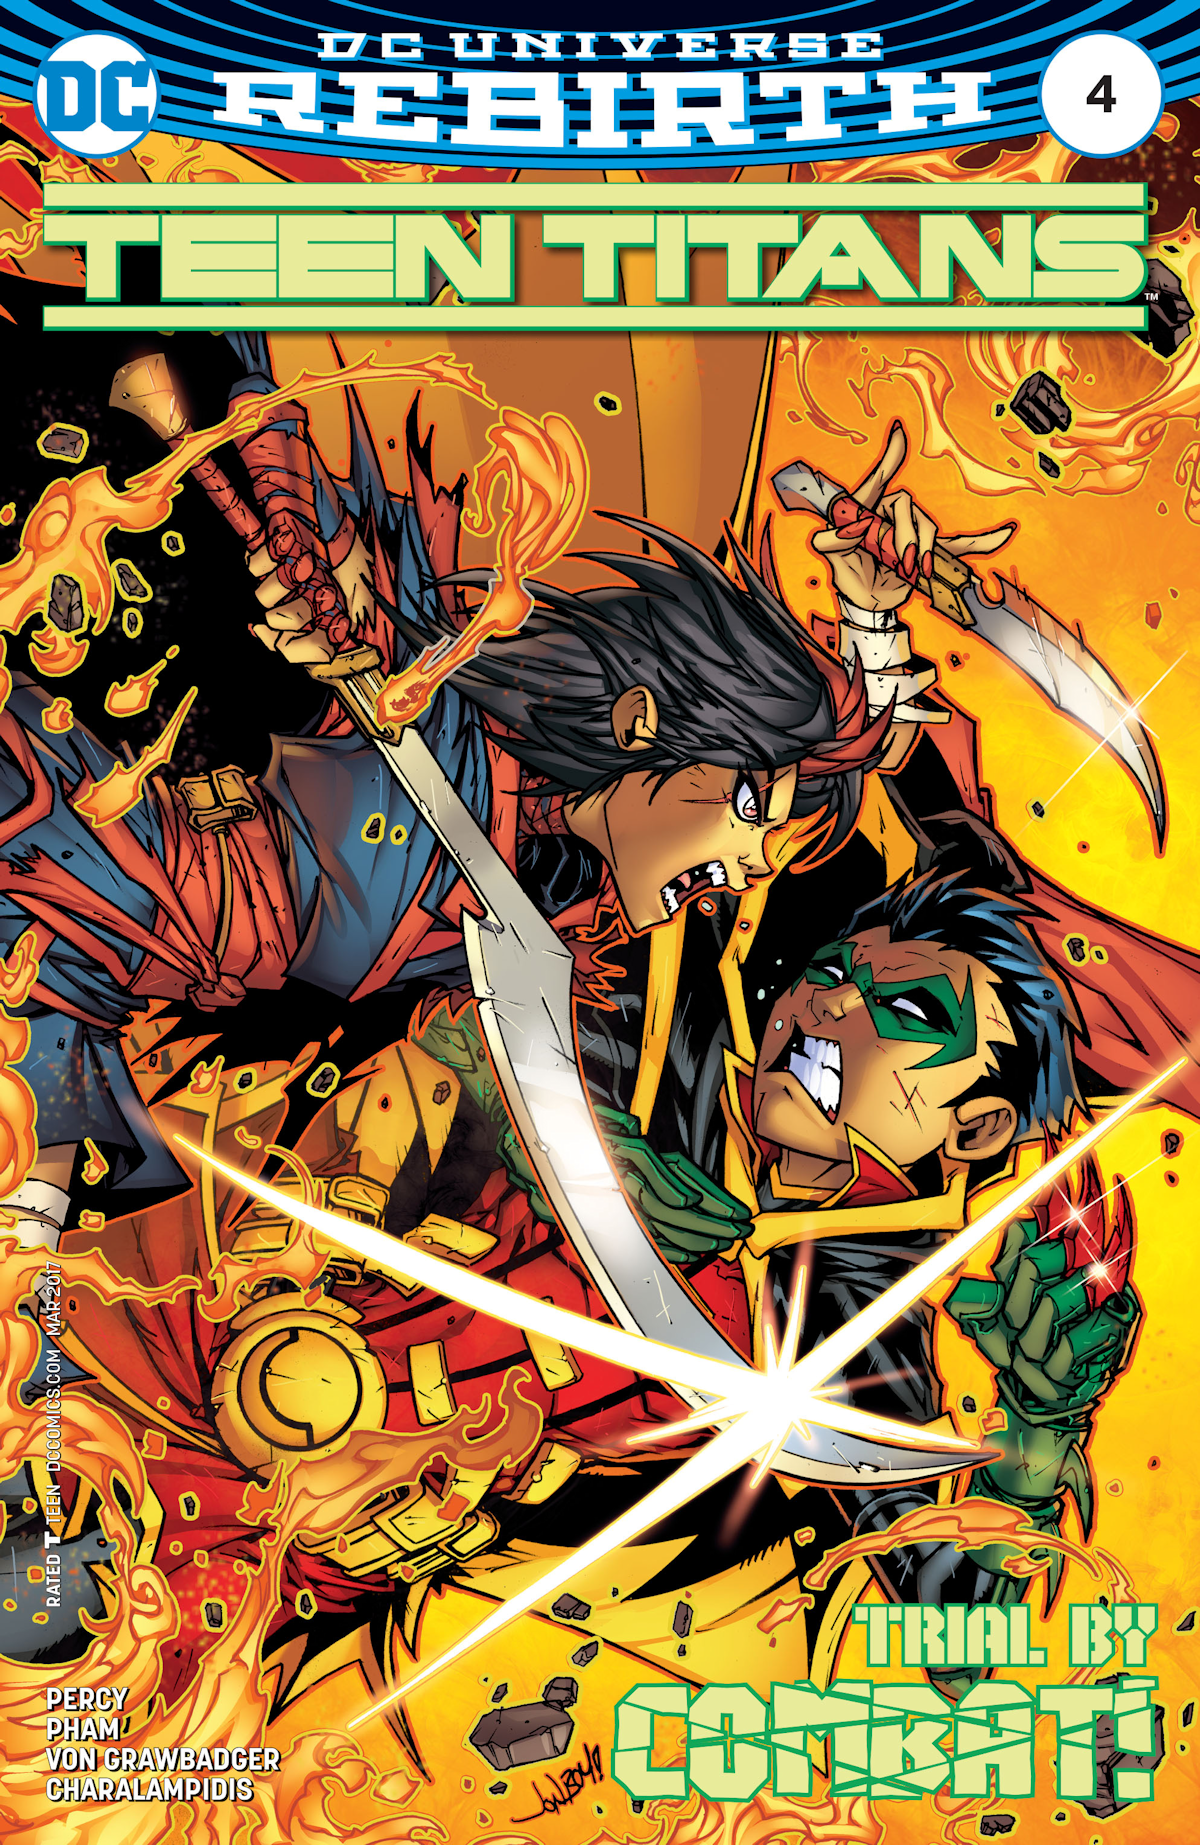 Teen Titans Vol. 6 4 (Cover A)